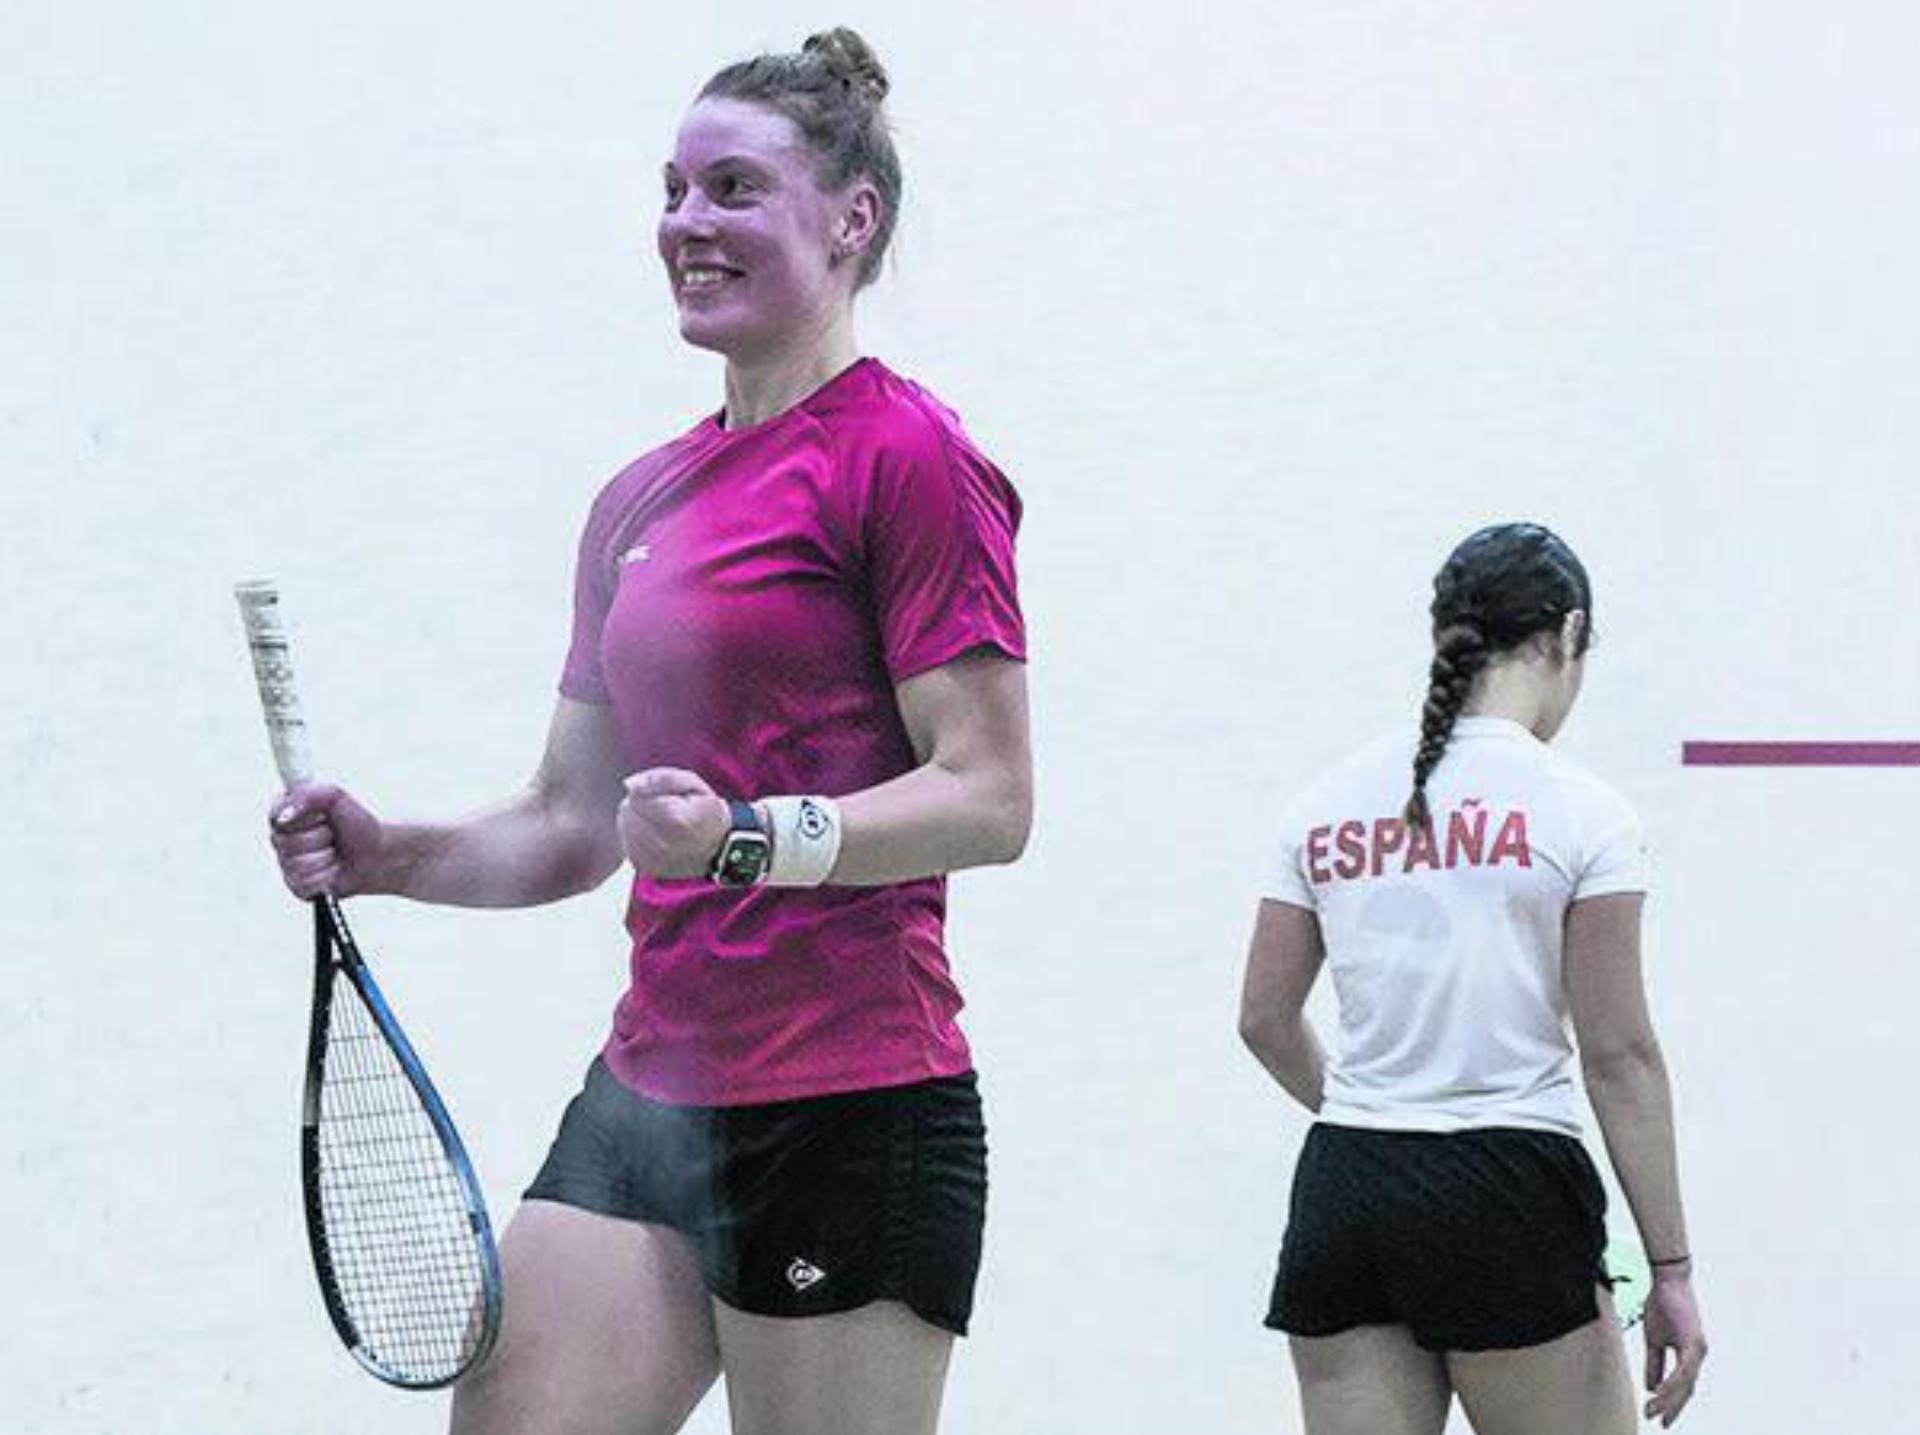 Glücklich und zufrieden: Nadia Pfister nach dem Sieg über die Spanierin Ona Blasco. Foto: Stefan Kleiser